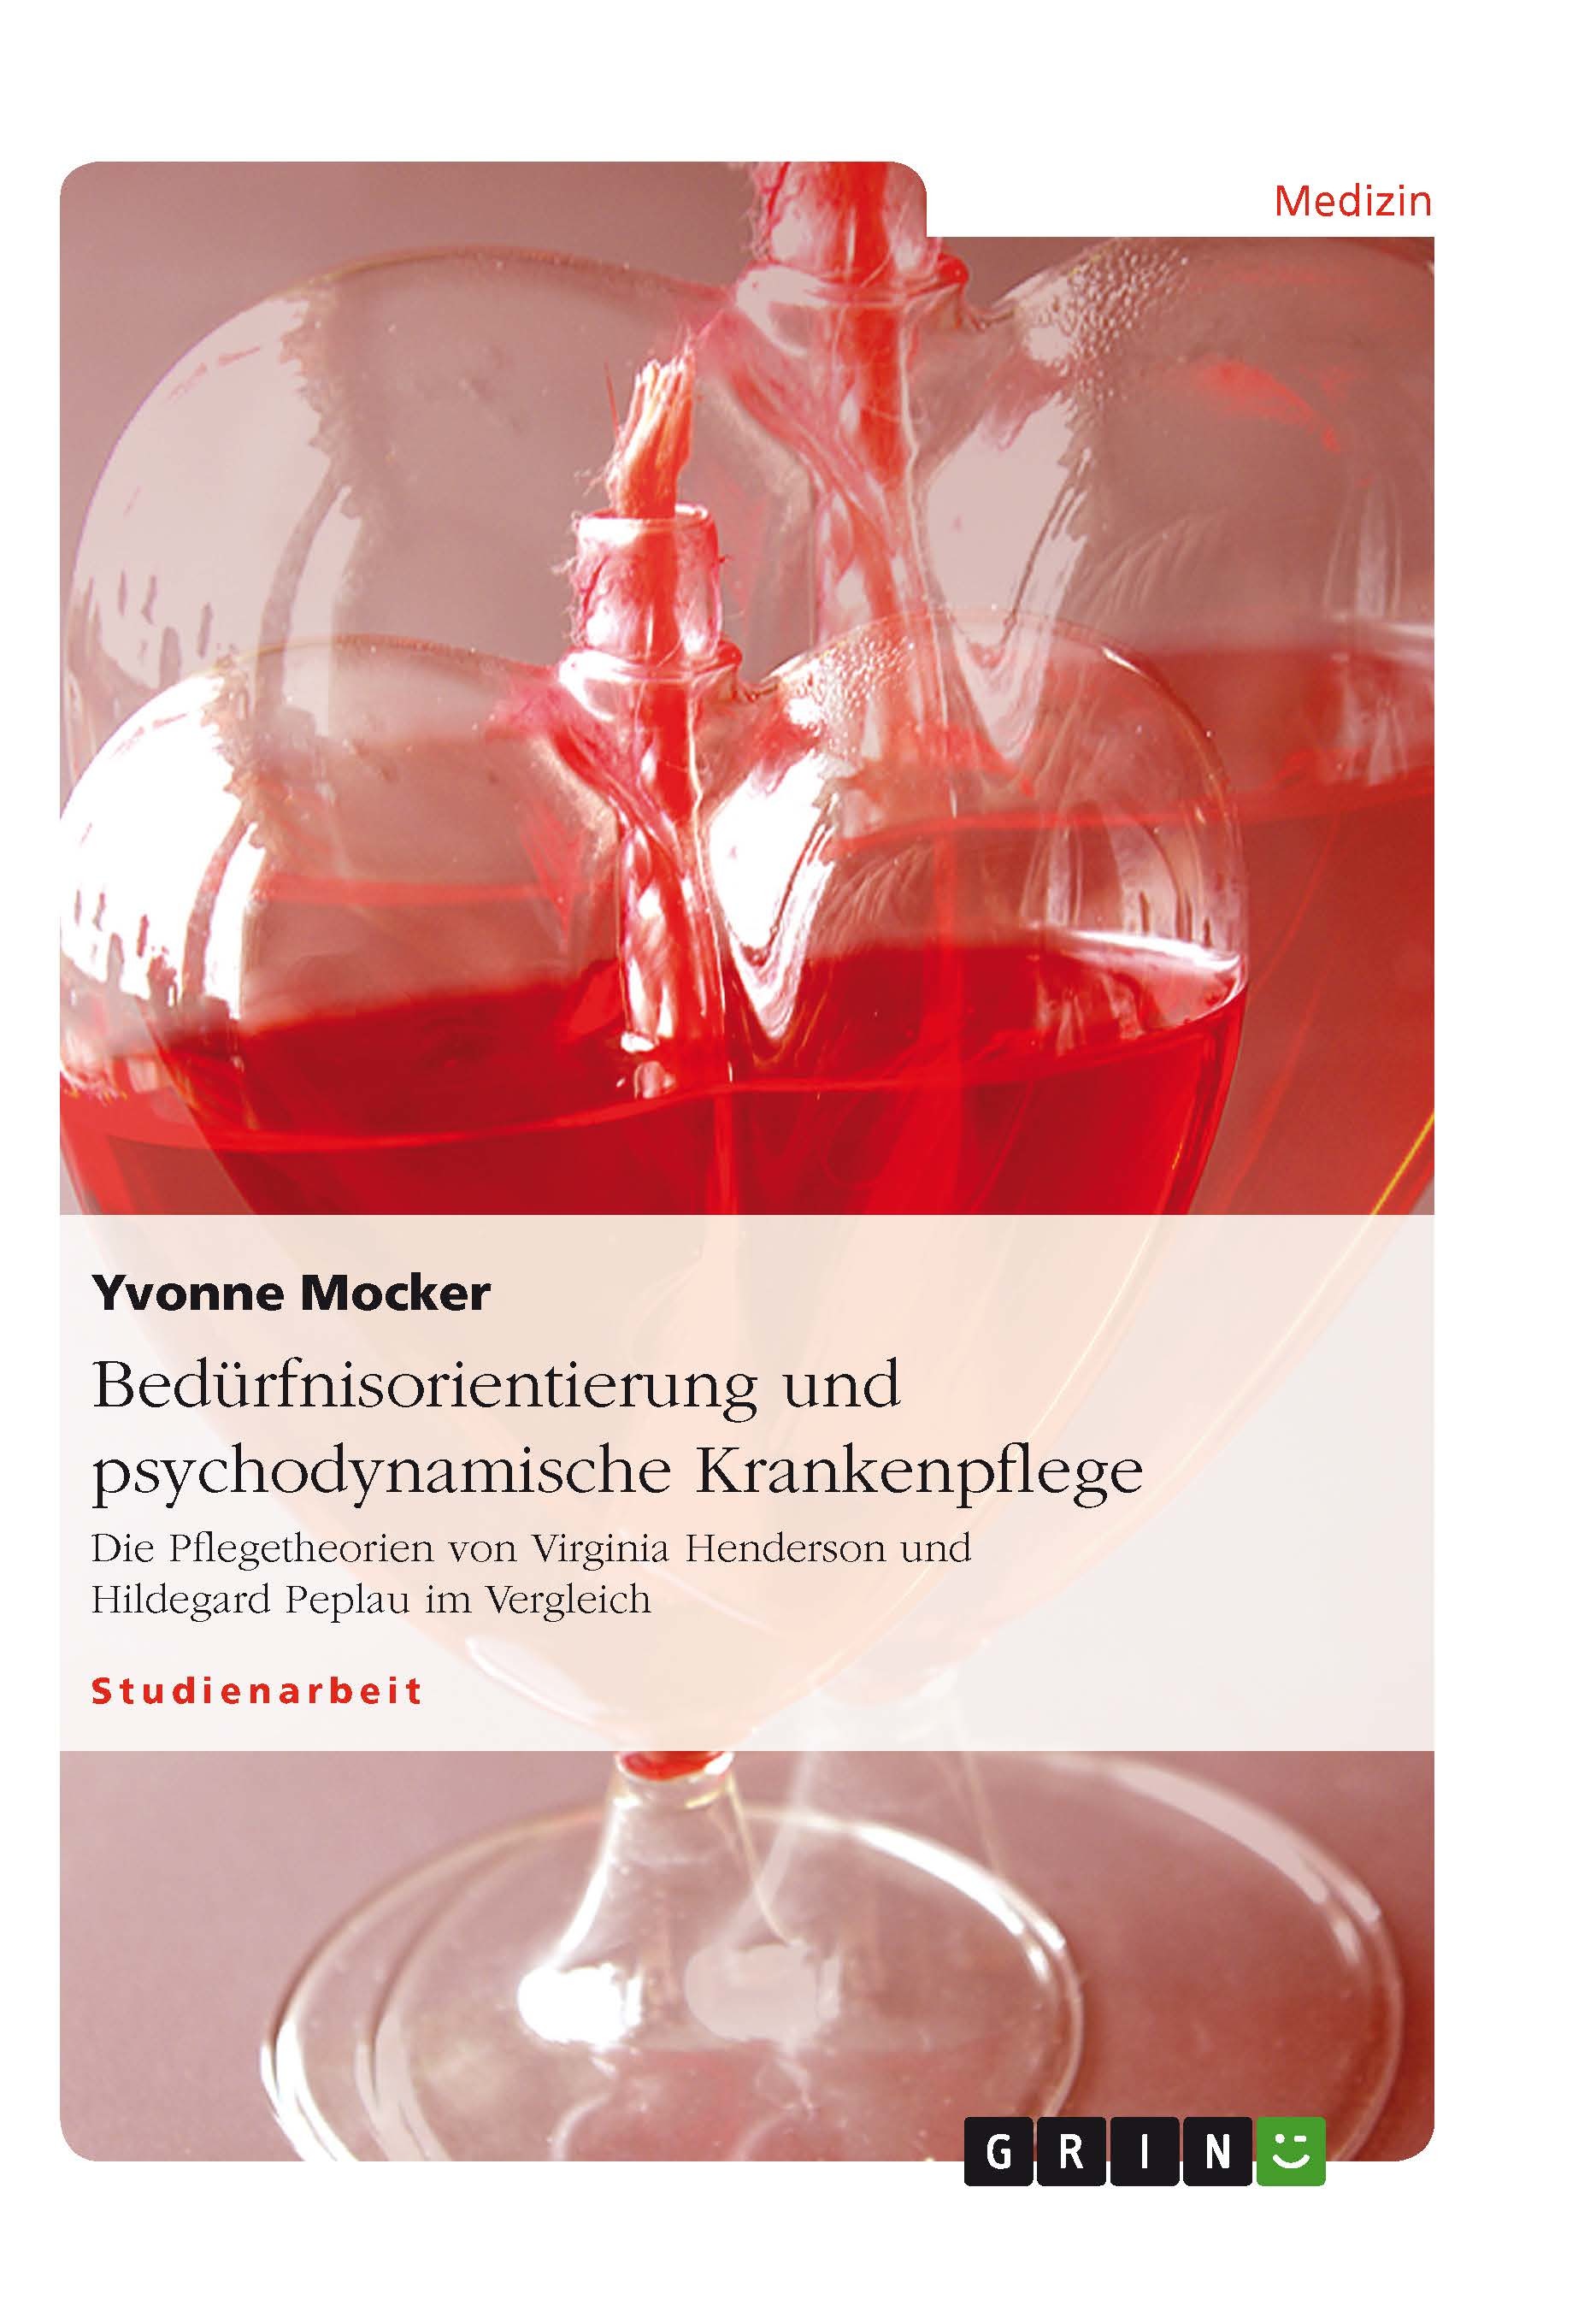 Titre: Bedürfnisorientierung und psychodynamische Krankenpflege 